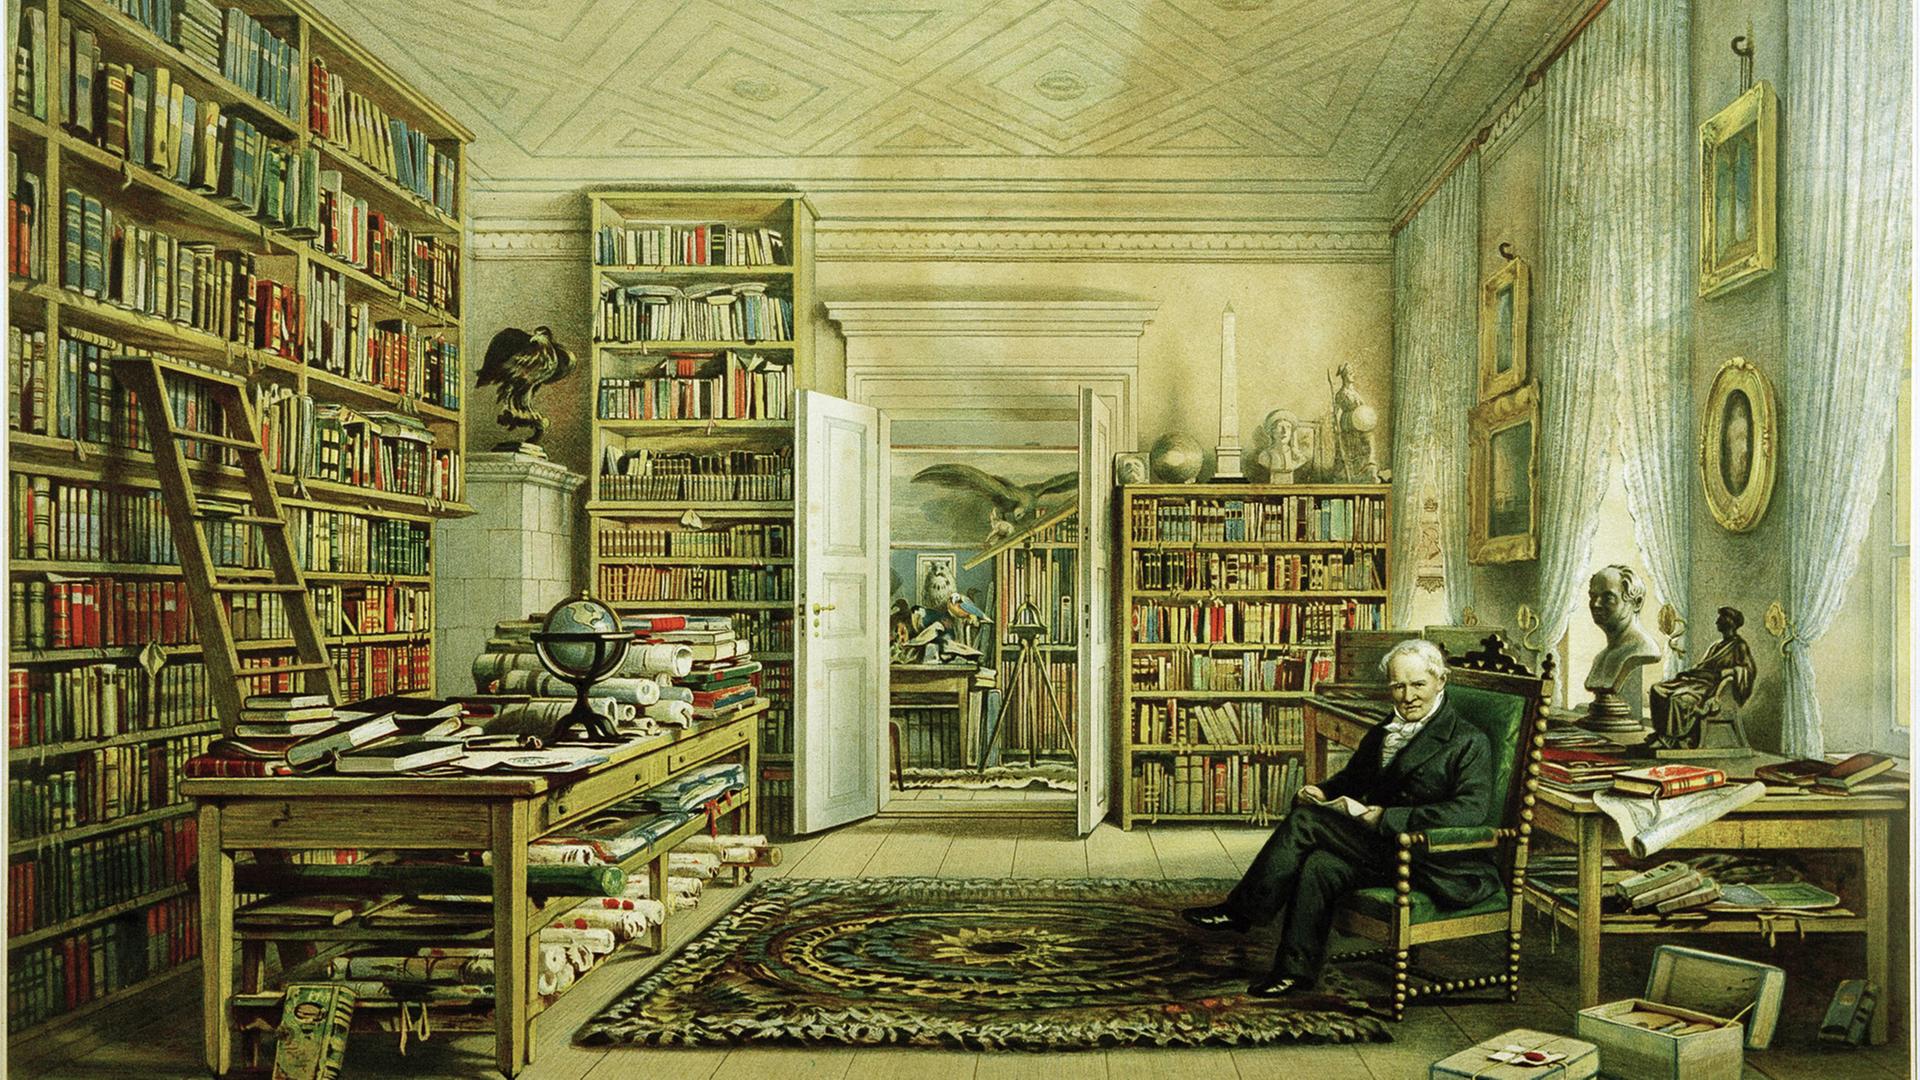 Farblithographie "Alexander von Humboldt in seinem Bibliothekszimmer in Berlin in der Oranienburger Straße 67". - Storch und Kramer nach dem Aquarell, 1856, von Eduard Hildebrandt (18181869)